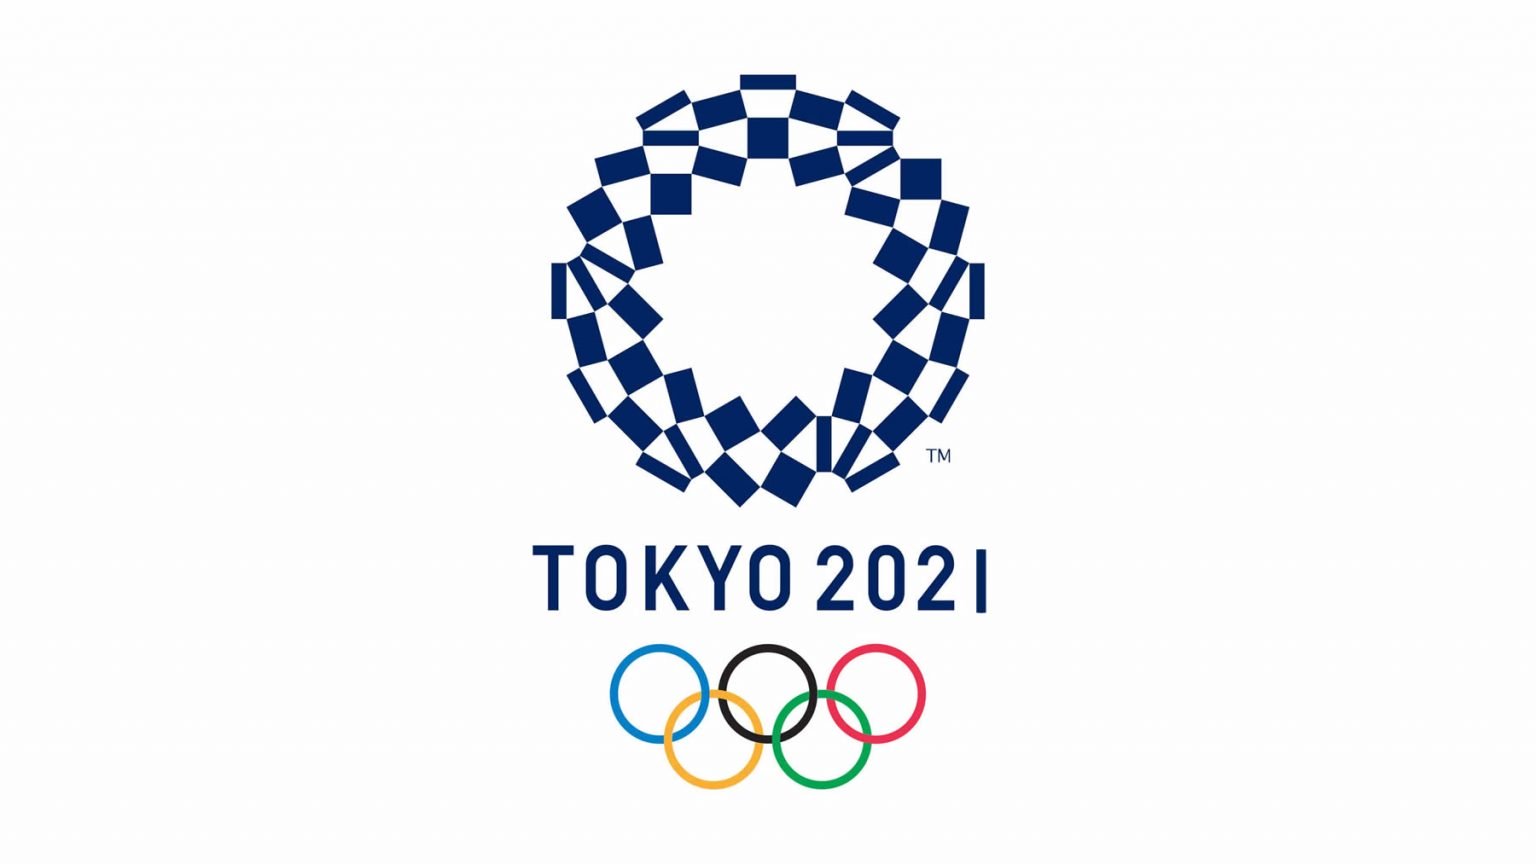 juegos olimpicos tokio 2021 1536x864